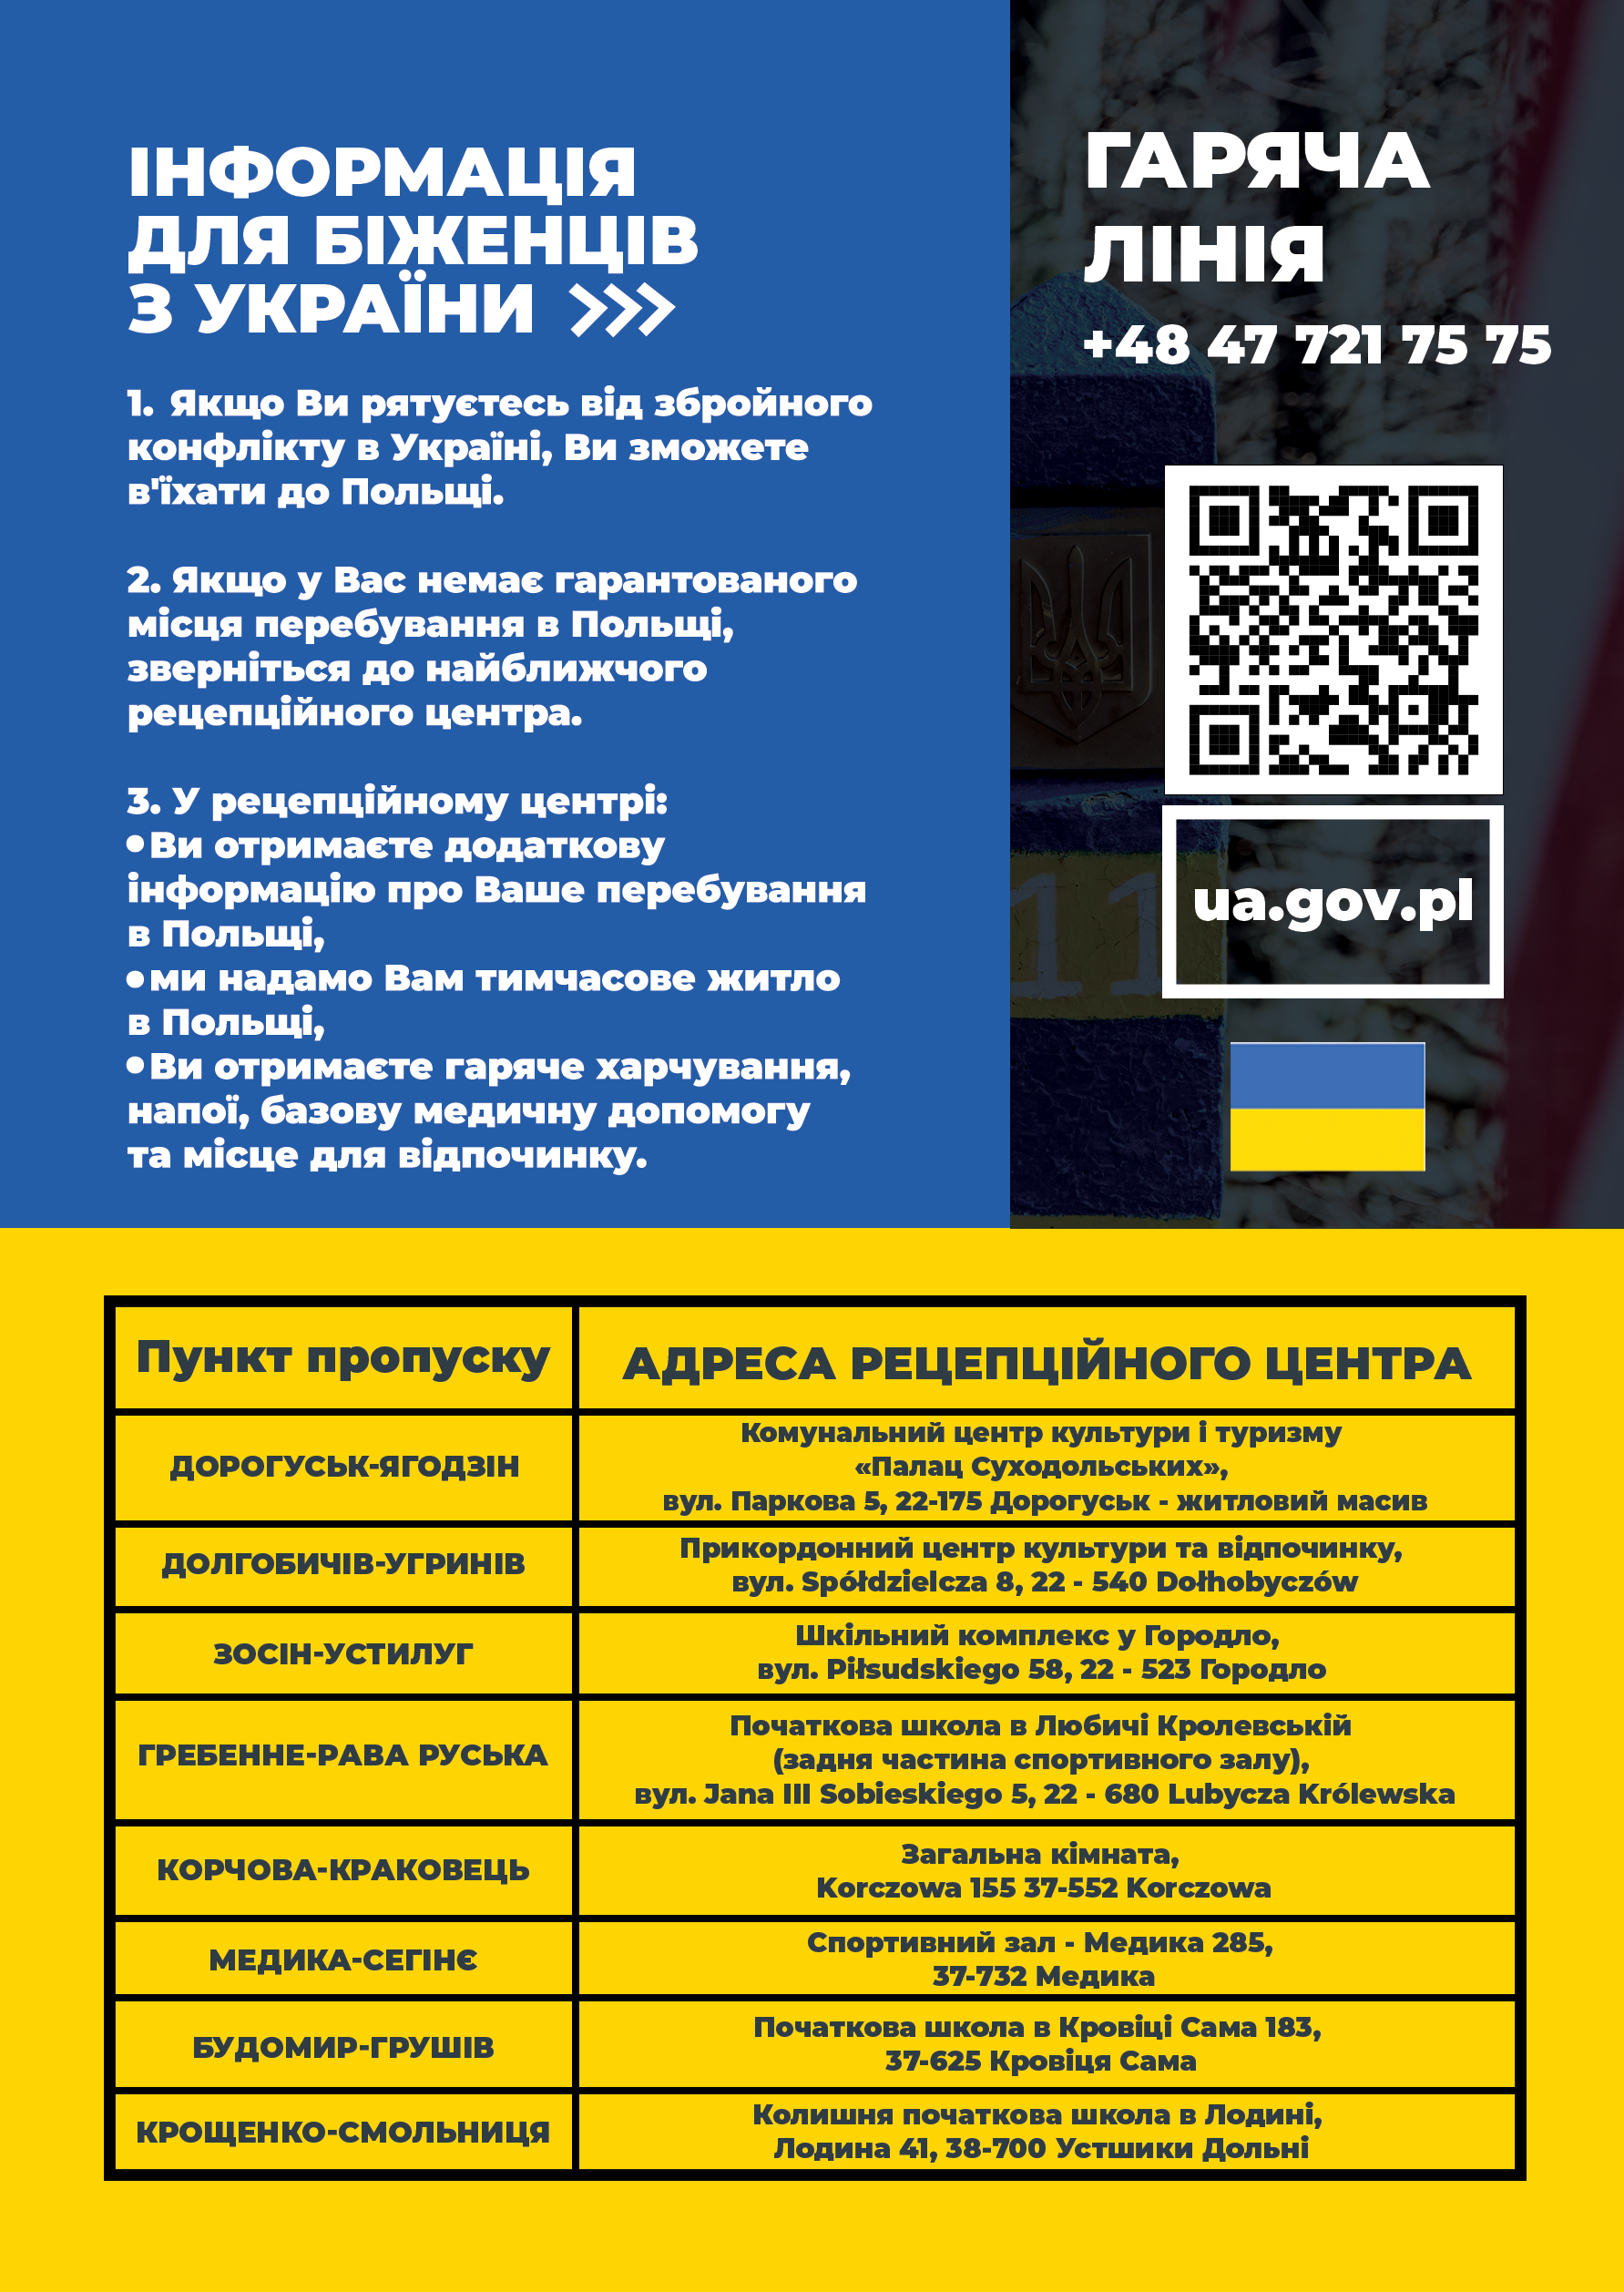 Informacja dla uchodźców z Ukrainy [Інформація для біженців з України]